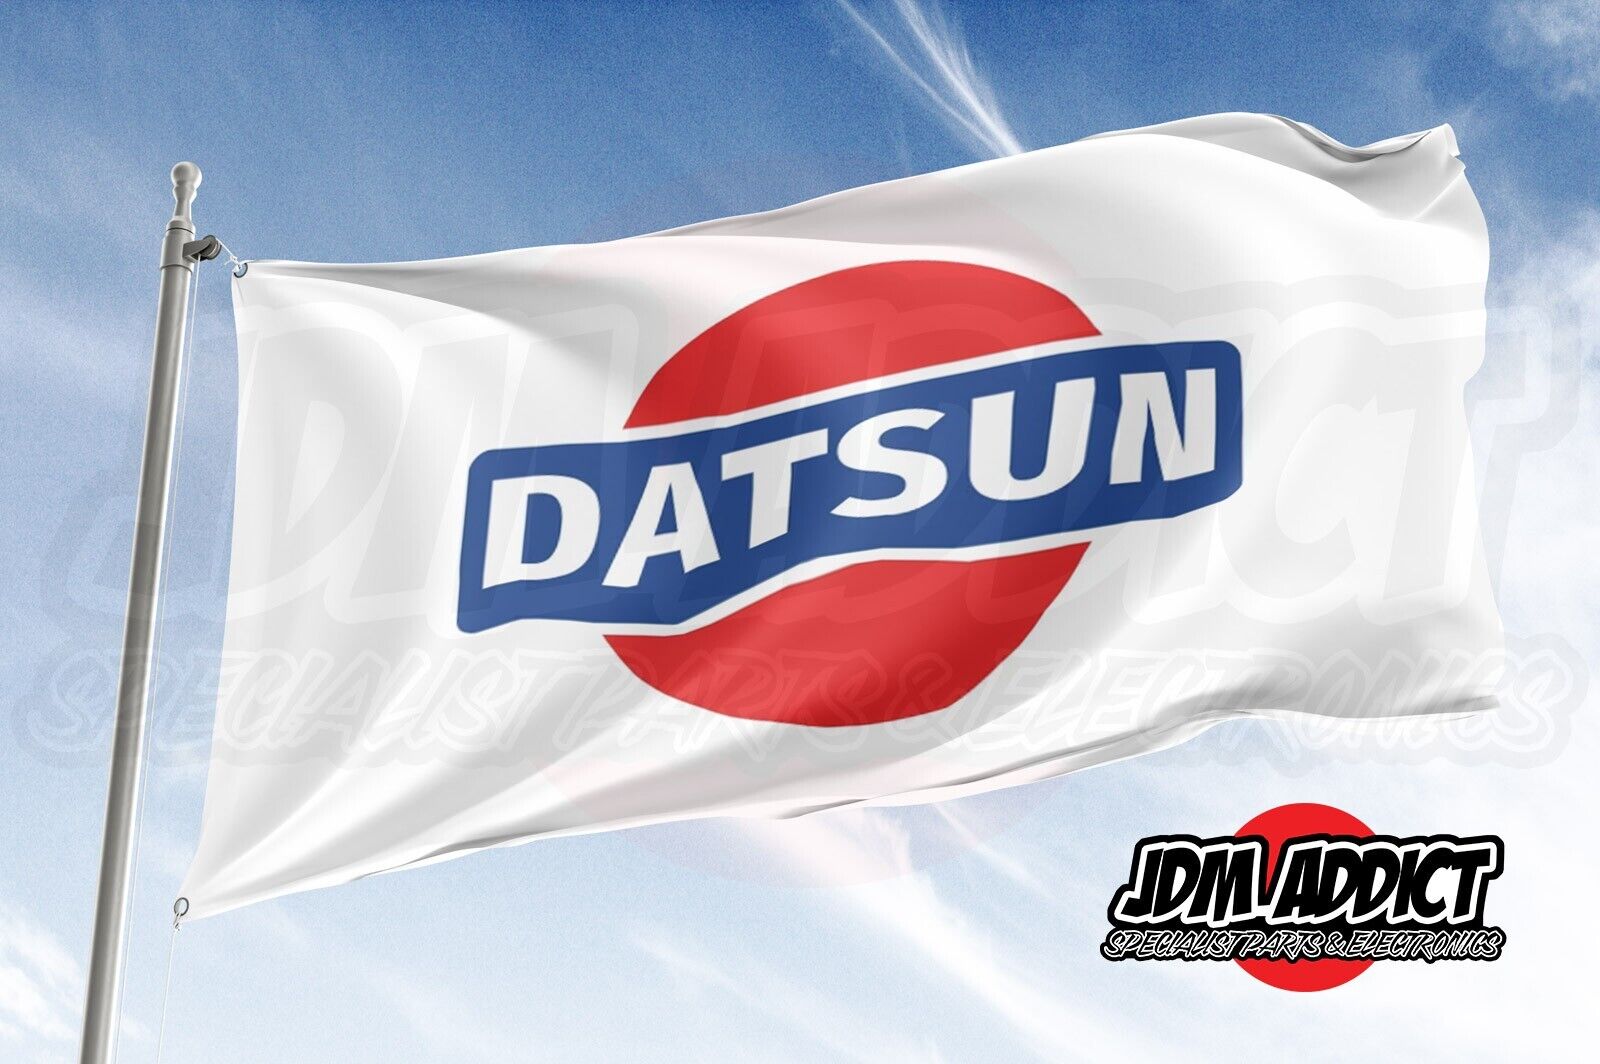 Vintage Datsun Logo